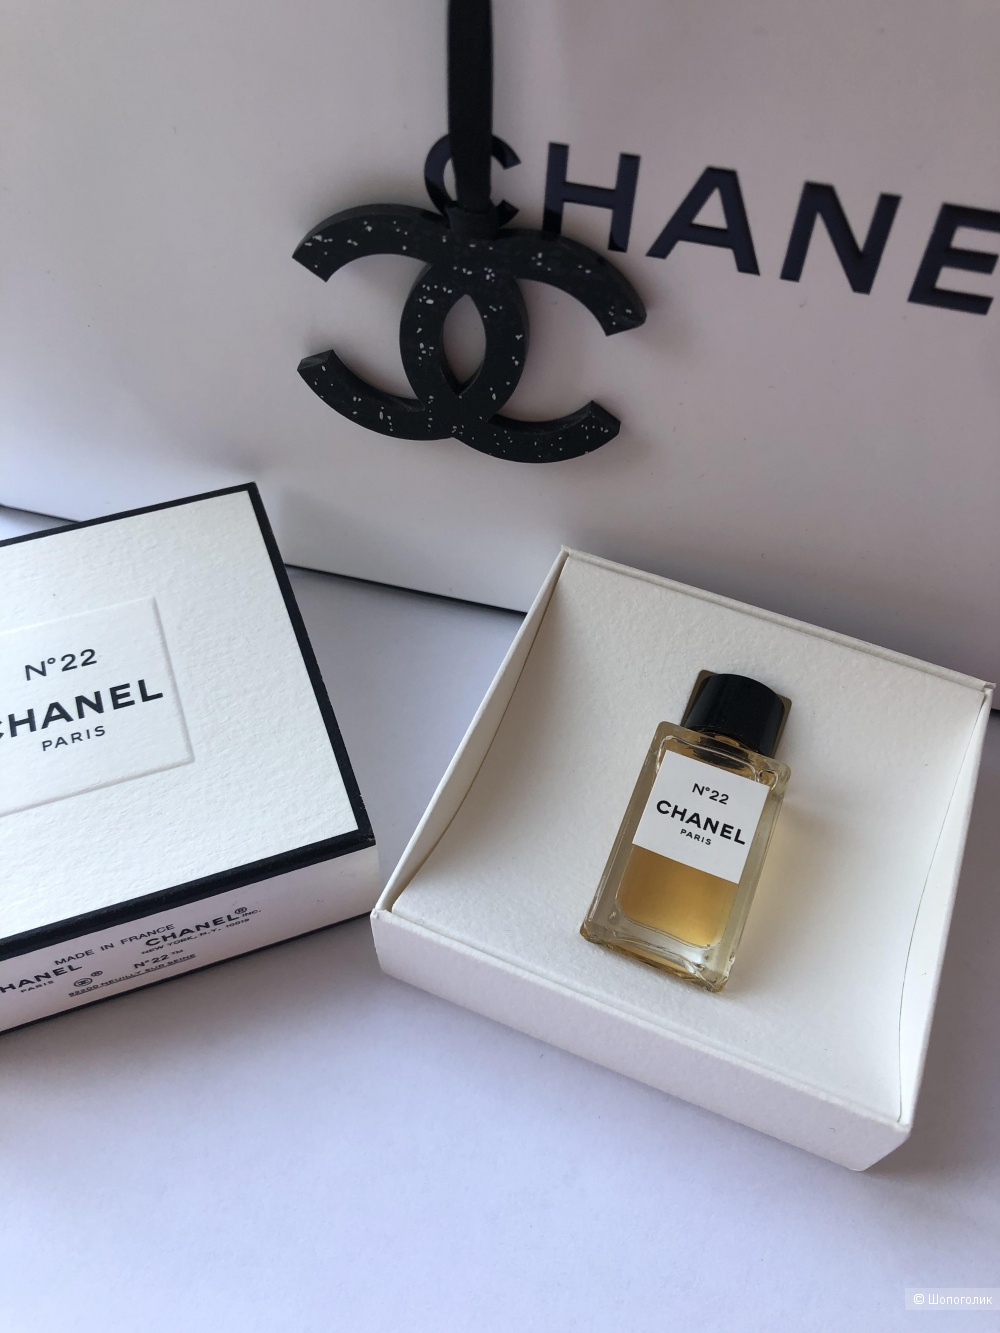 Chanel LES EXCLUSIFS DE CHANEL 22, миниатюра 4 мл